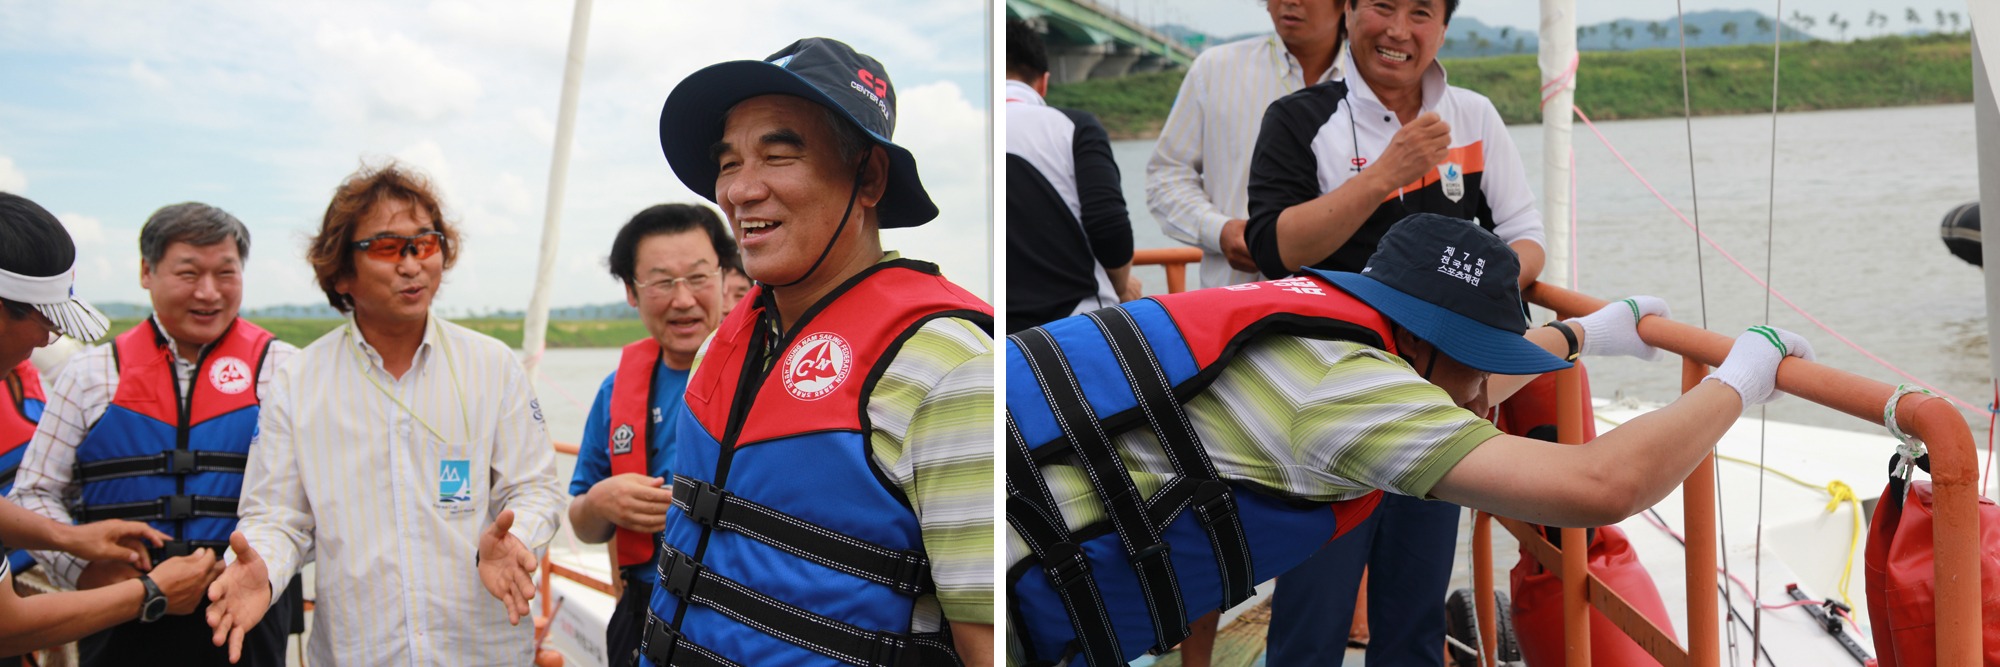 최광식장관 카누 체험을 하기 전 안전을 위해 구명조끼를 착용한 모습